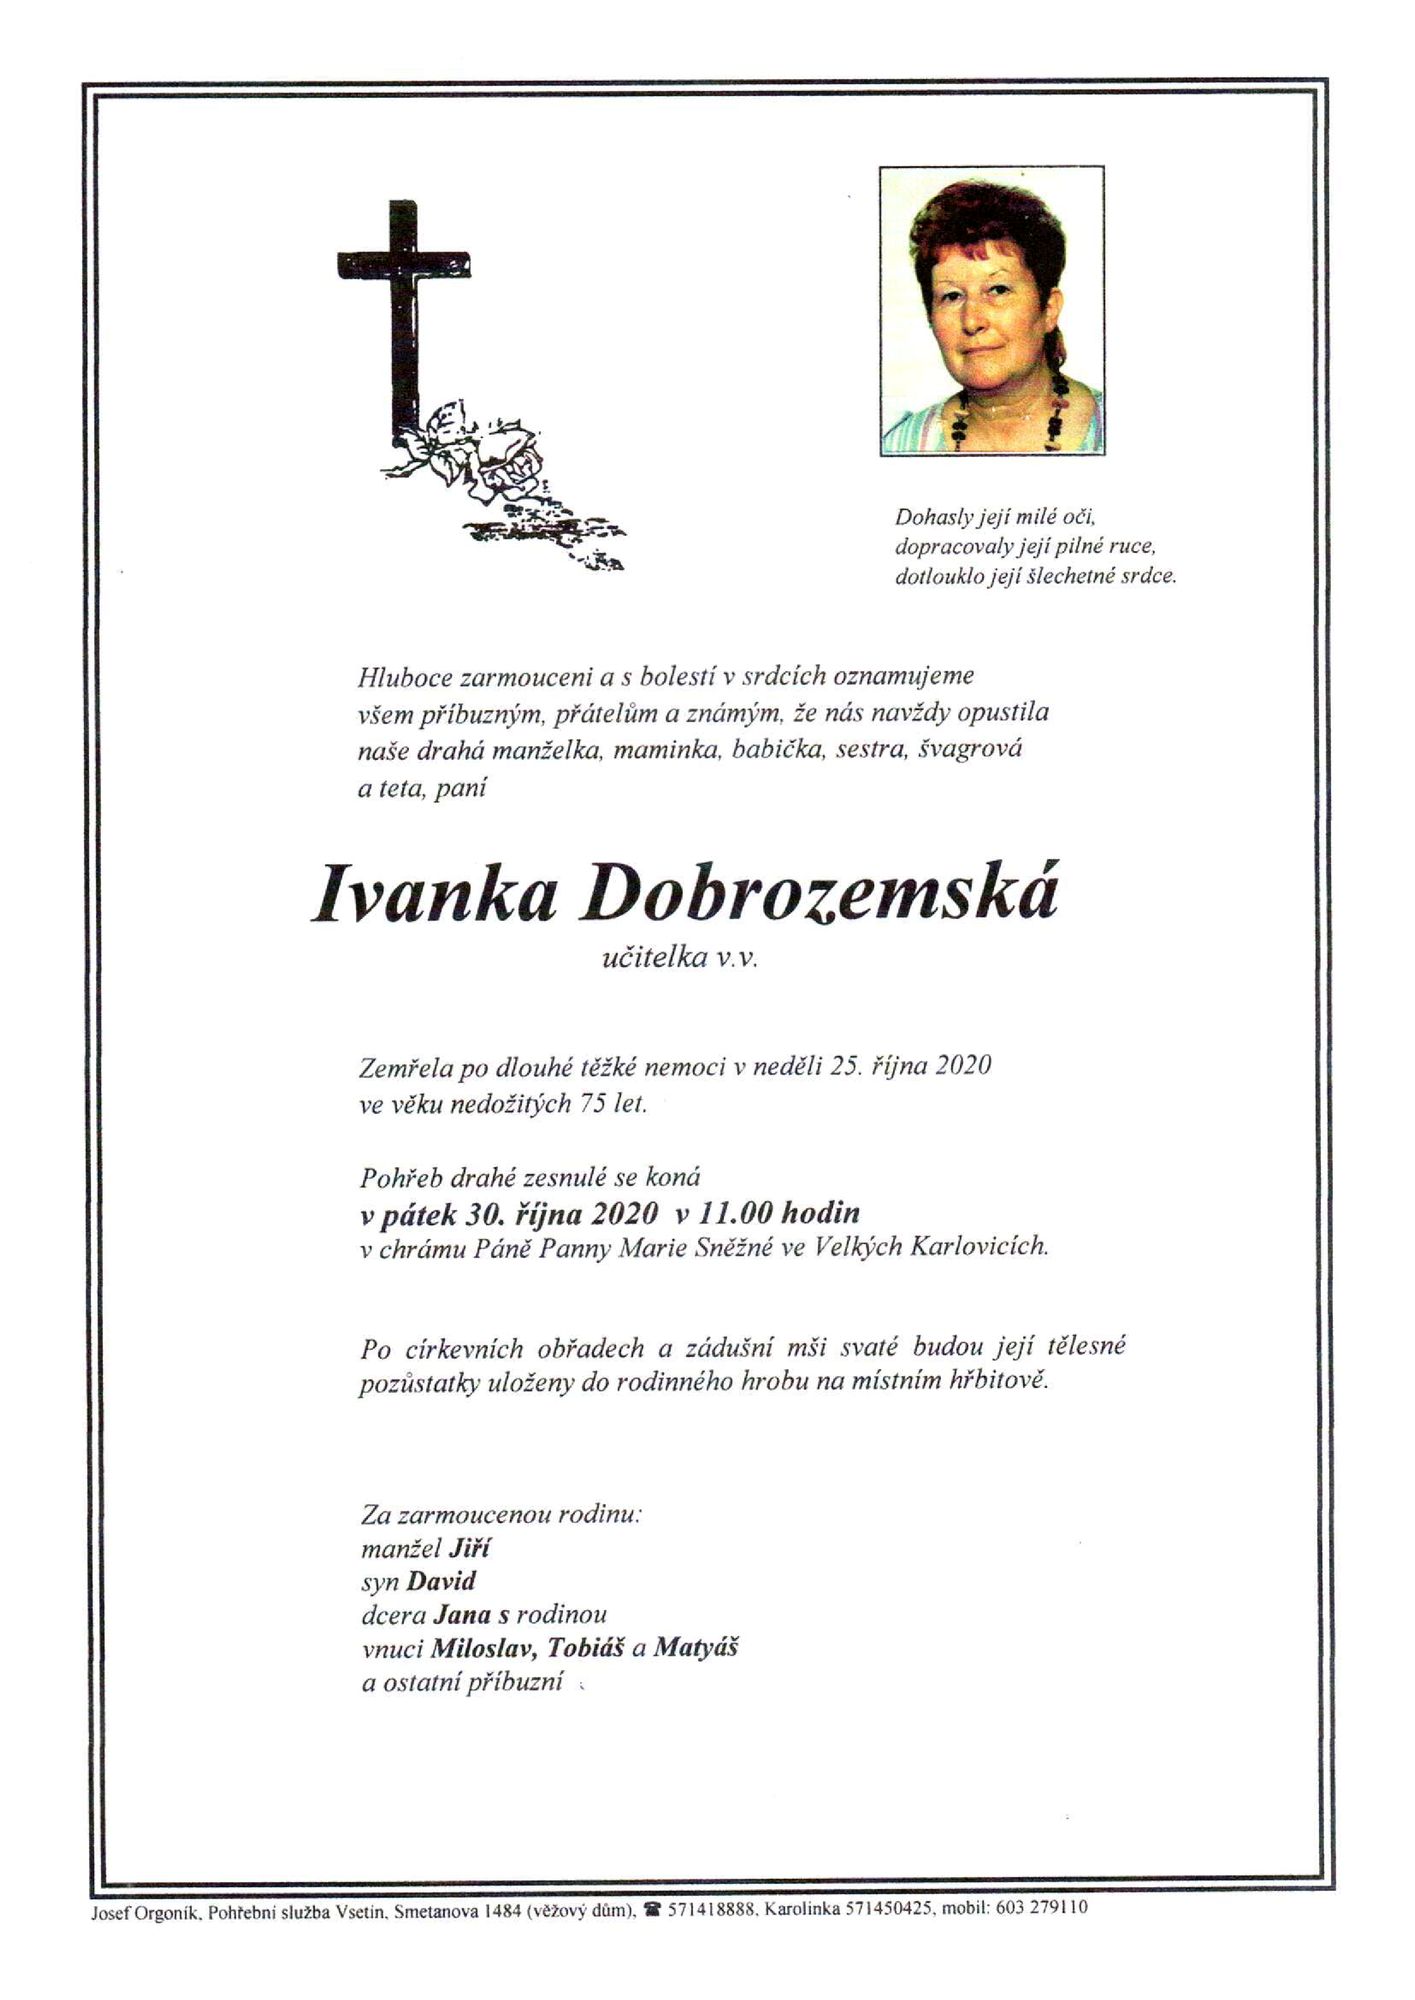 Ivanka Dobrozemská